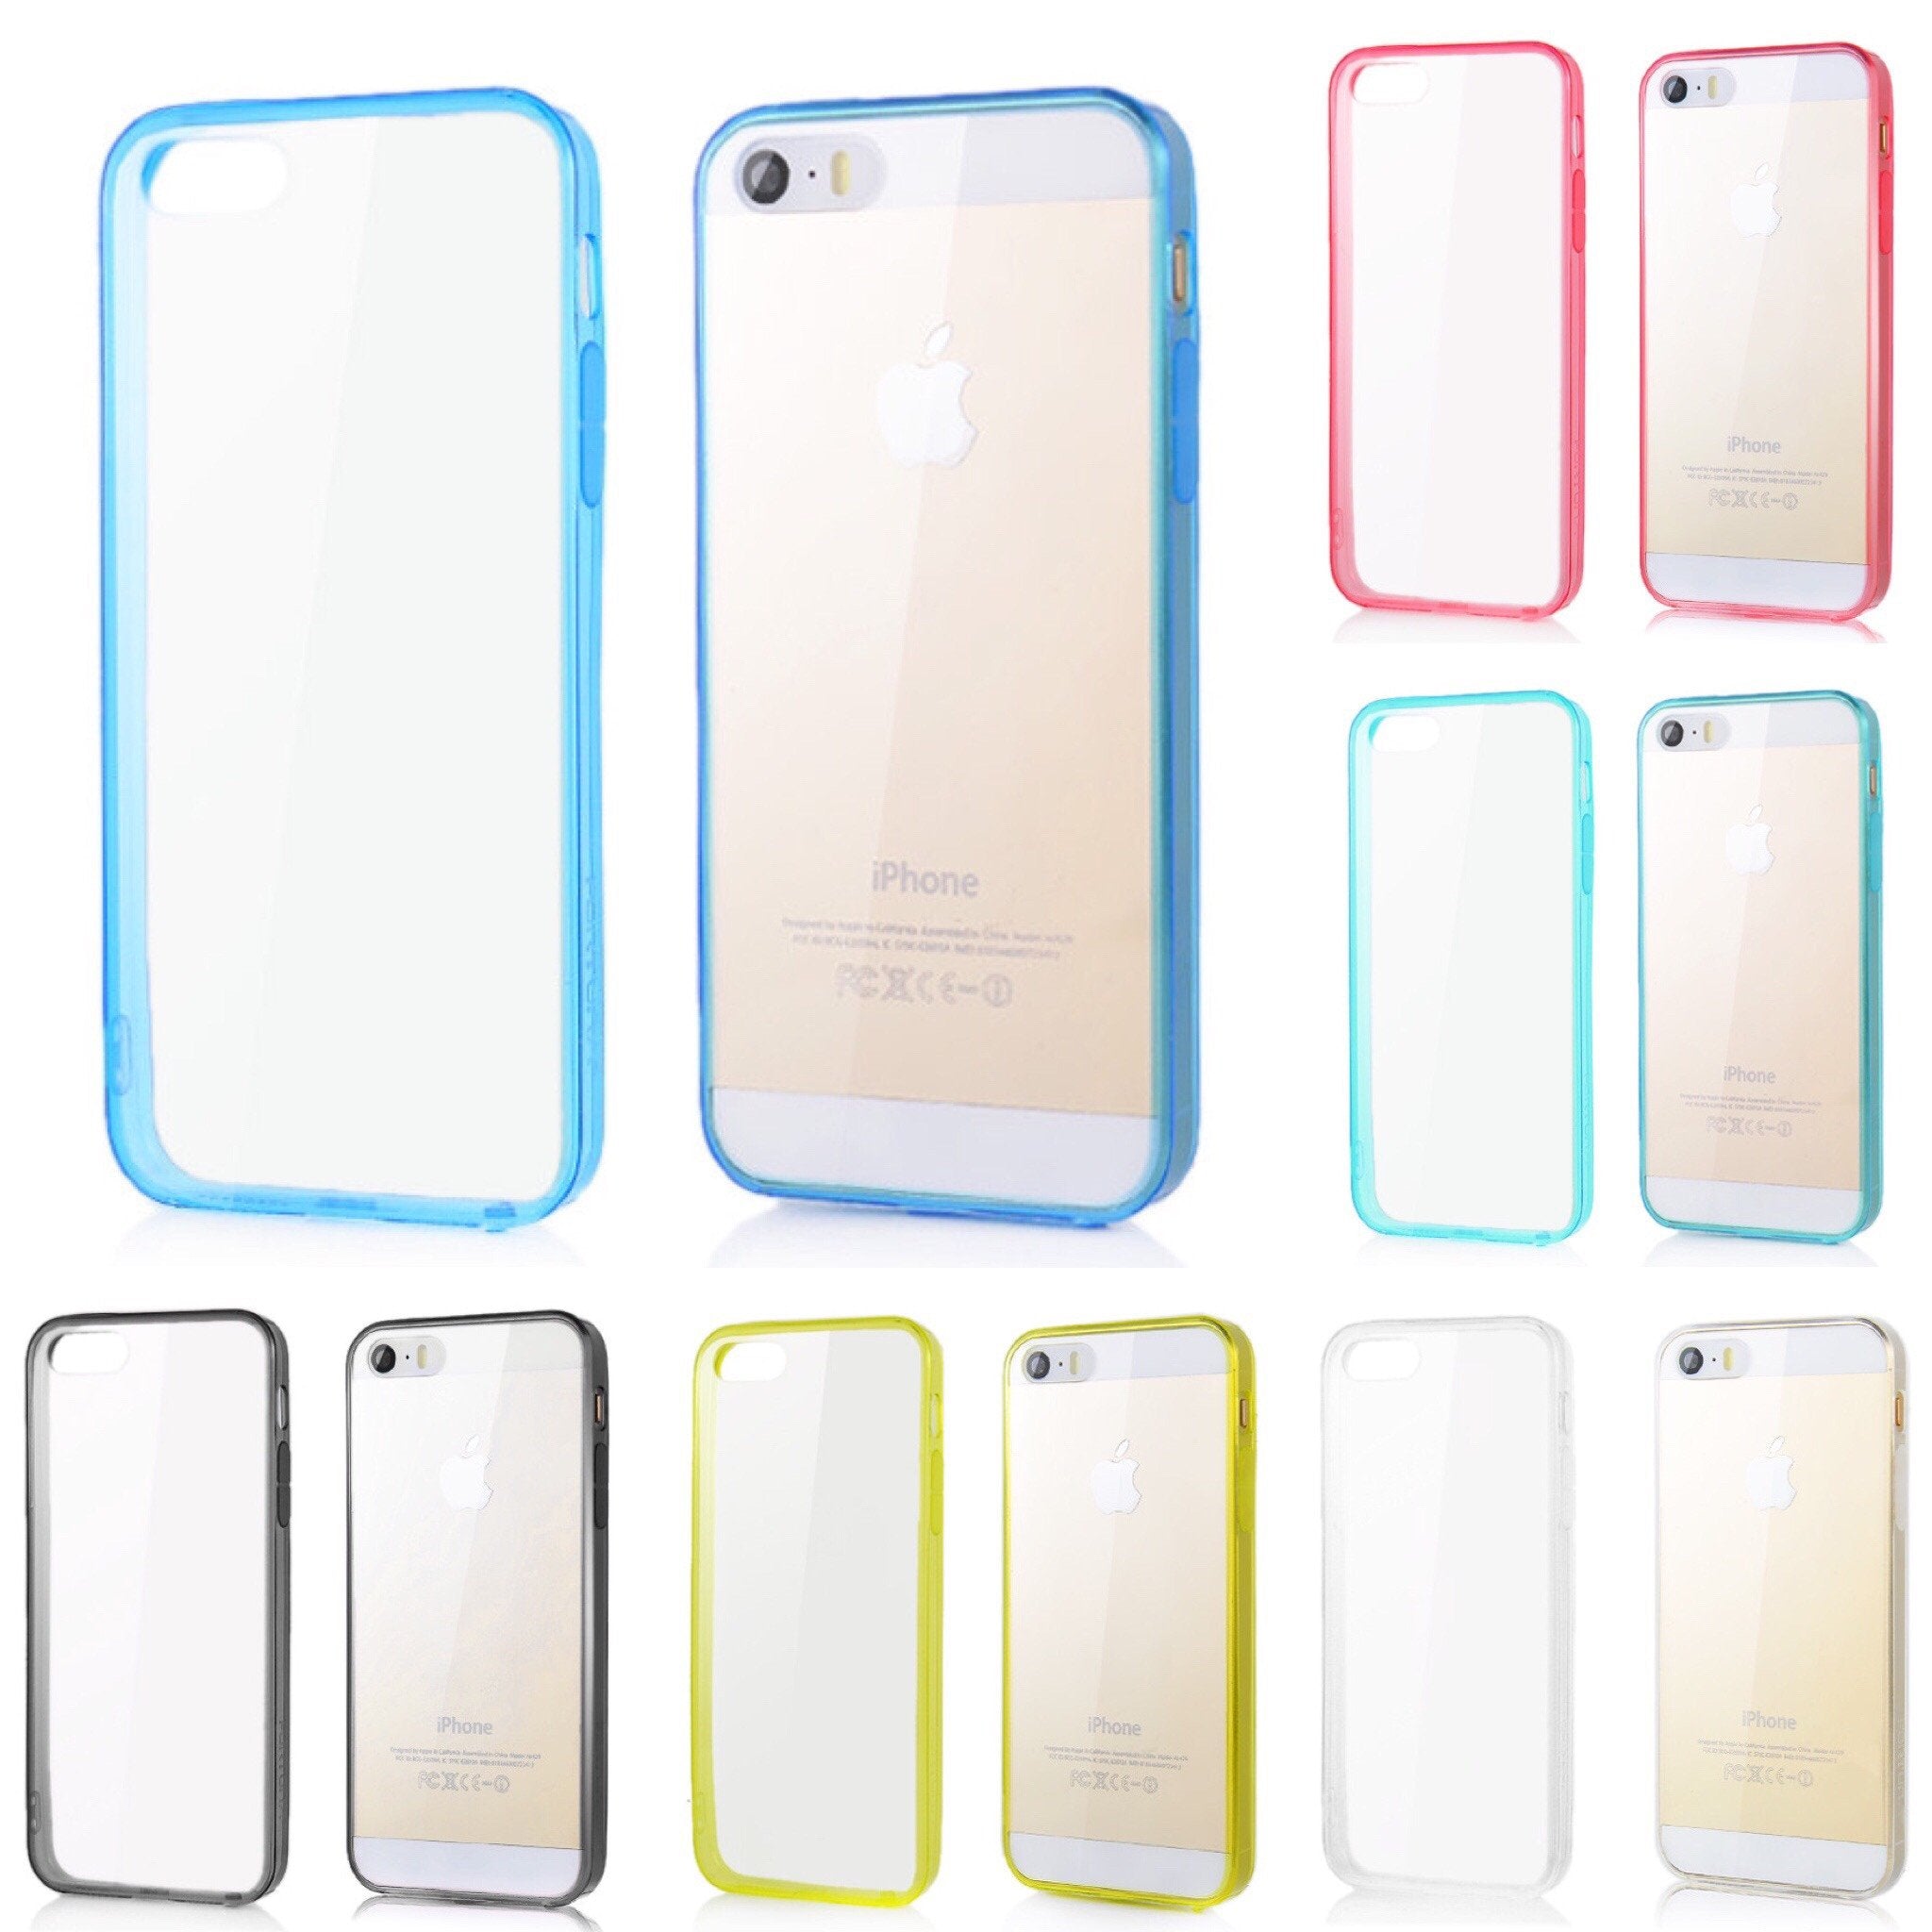 Θηκη TPU - iPhone 5/5s/SE (5 Χρωματα) - iThinksmart.gr